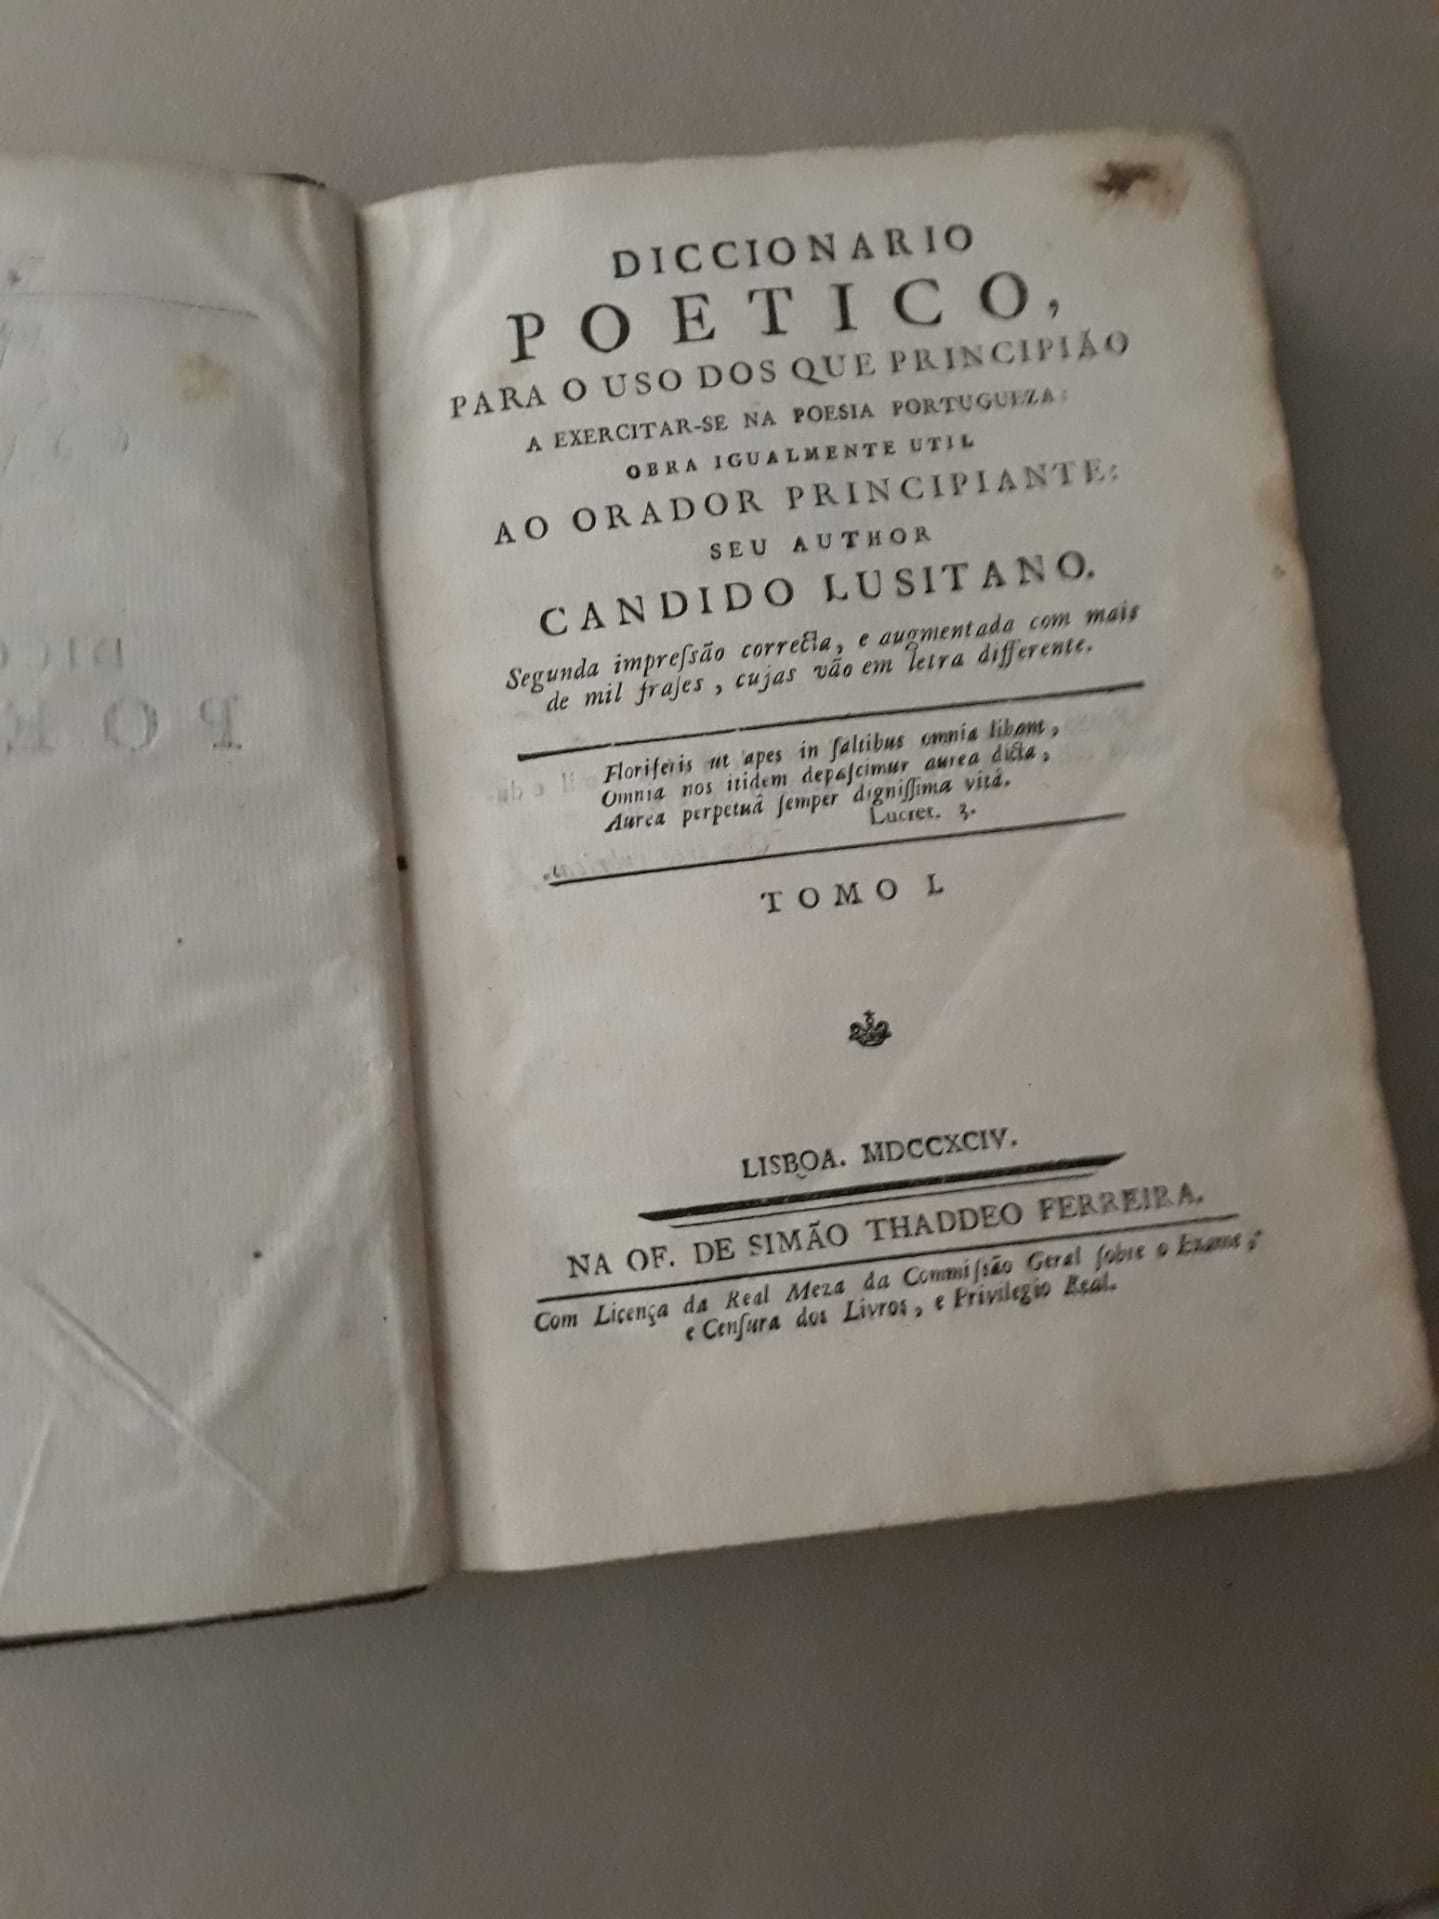 Dicionario Poetico -Candido Lusitano